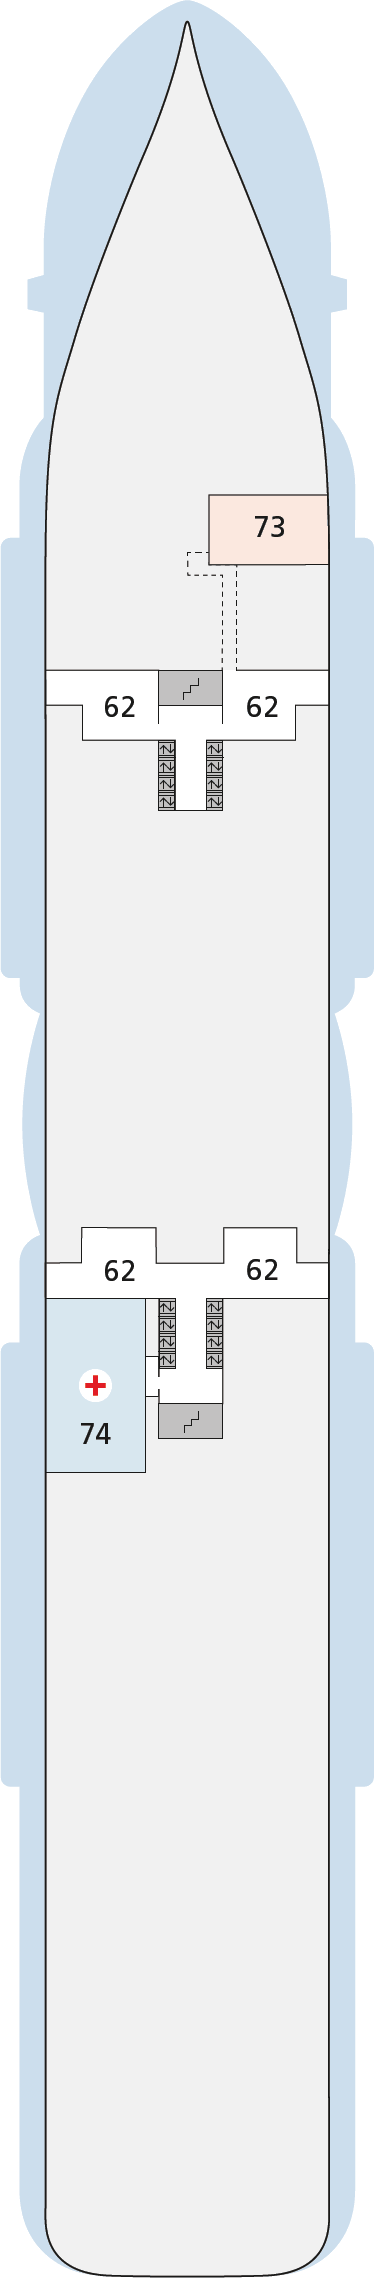 AIDAcosma - Deck Nr. 3 (Deck 3)